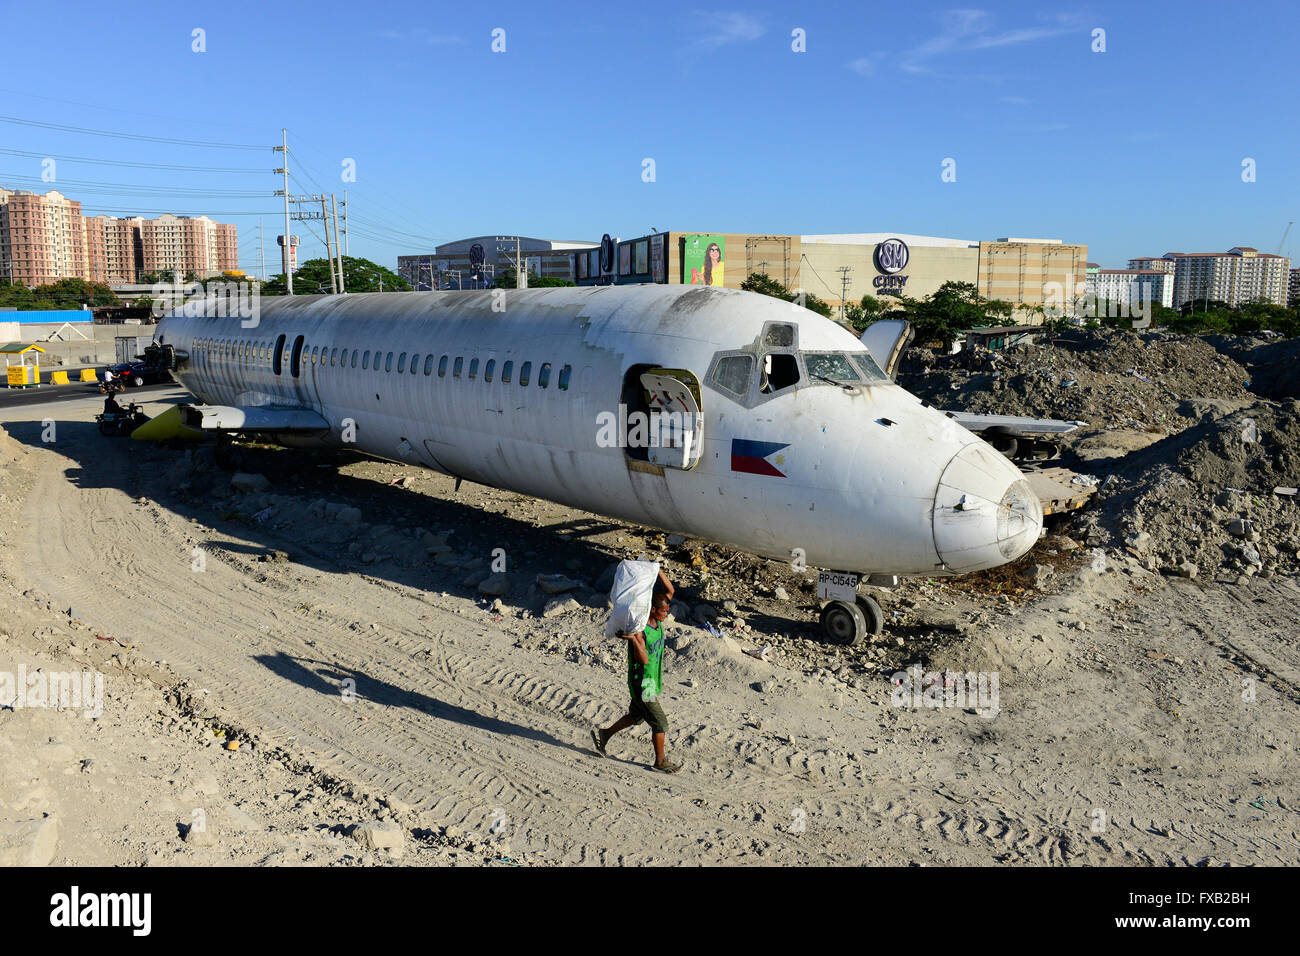 Filippine, Manila, Parañaque City, oggetto di dumping aereo McDonnell Douglas DC-9 della compagnia aerea filippina Cebu Pacific, dietro SM city shopping mall Sucat Foto Stock